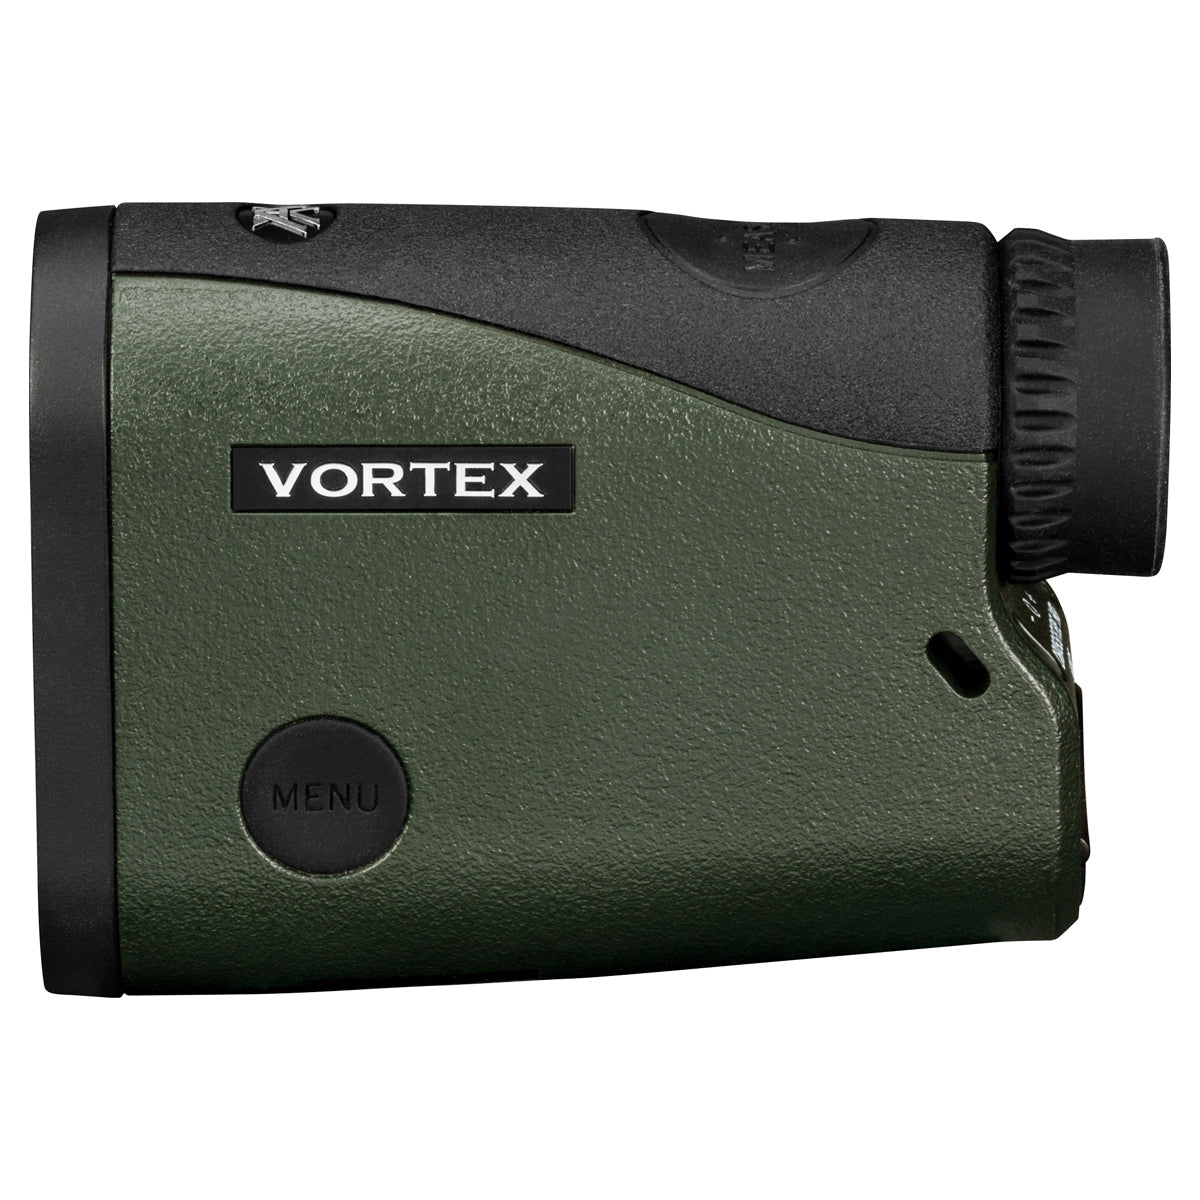 Vortex Crossfire II HD 1400 Laser Rangefinder in  by GOHUNT | Vortex Optics - GOHUNT Shop